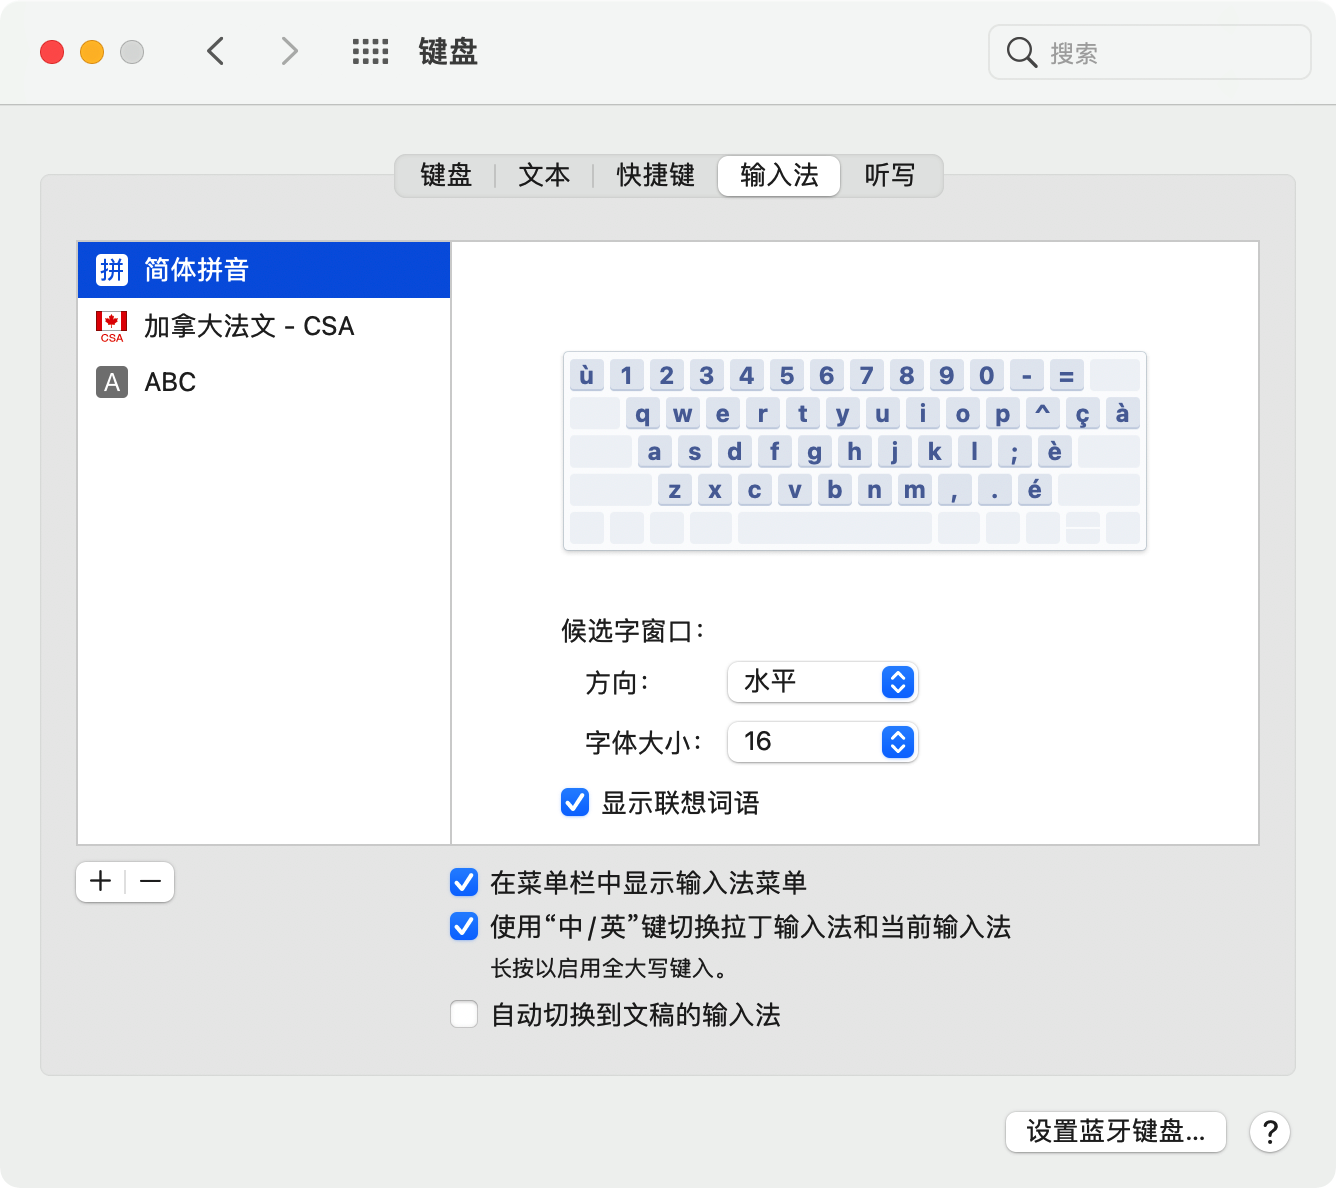 简体中文输入时混有法语字符怎么办 Apple 社区